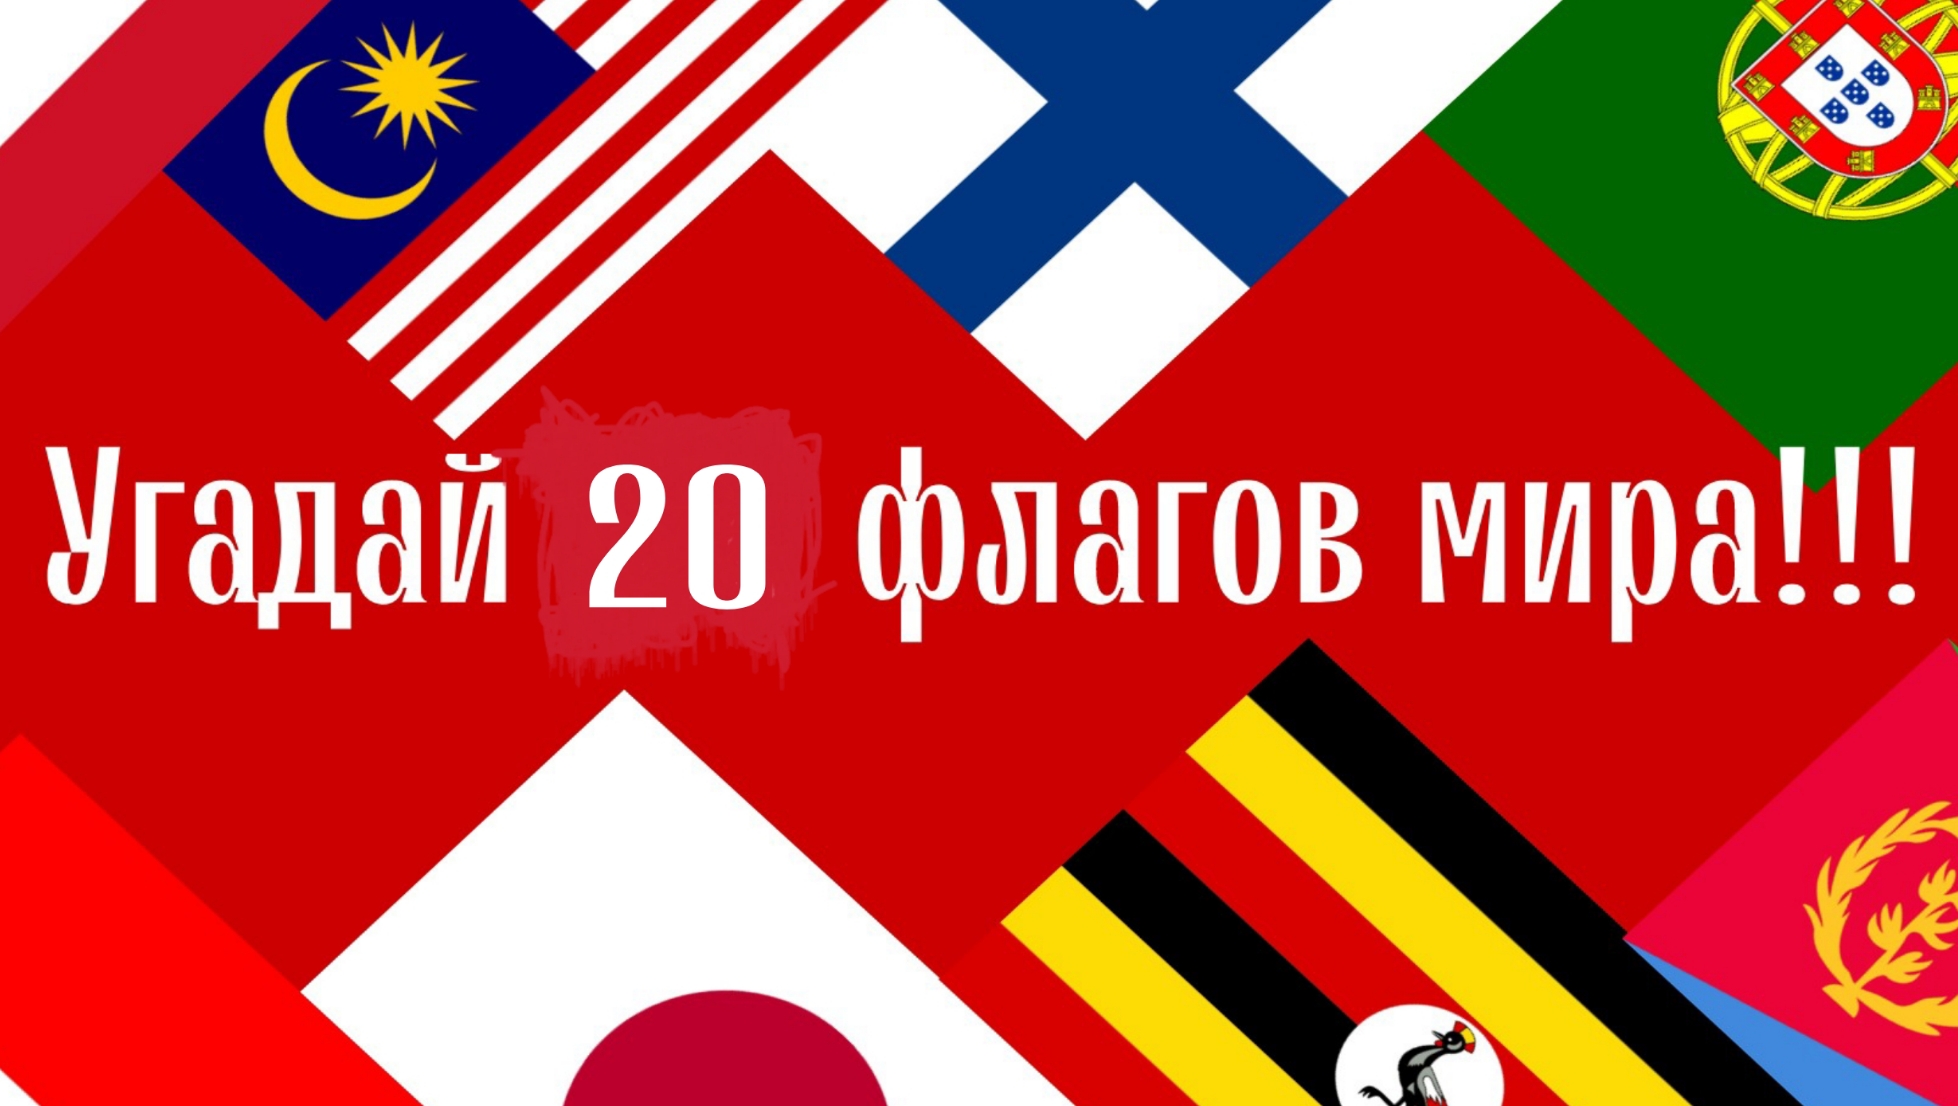 Сможешь ли ты🫵угадать 20 стран мира по флагу за 7 секунд?🤨